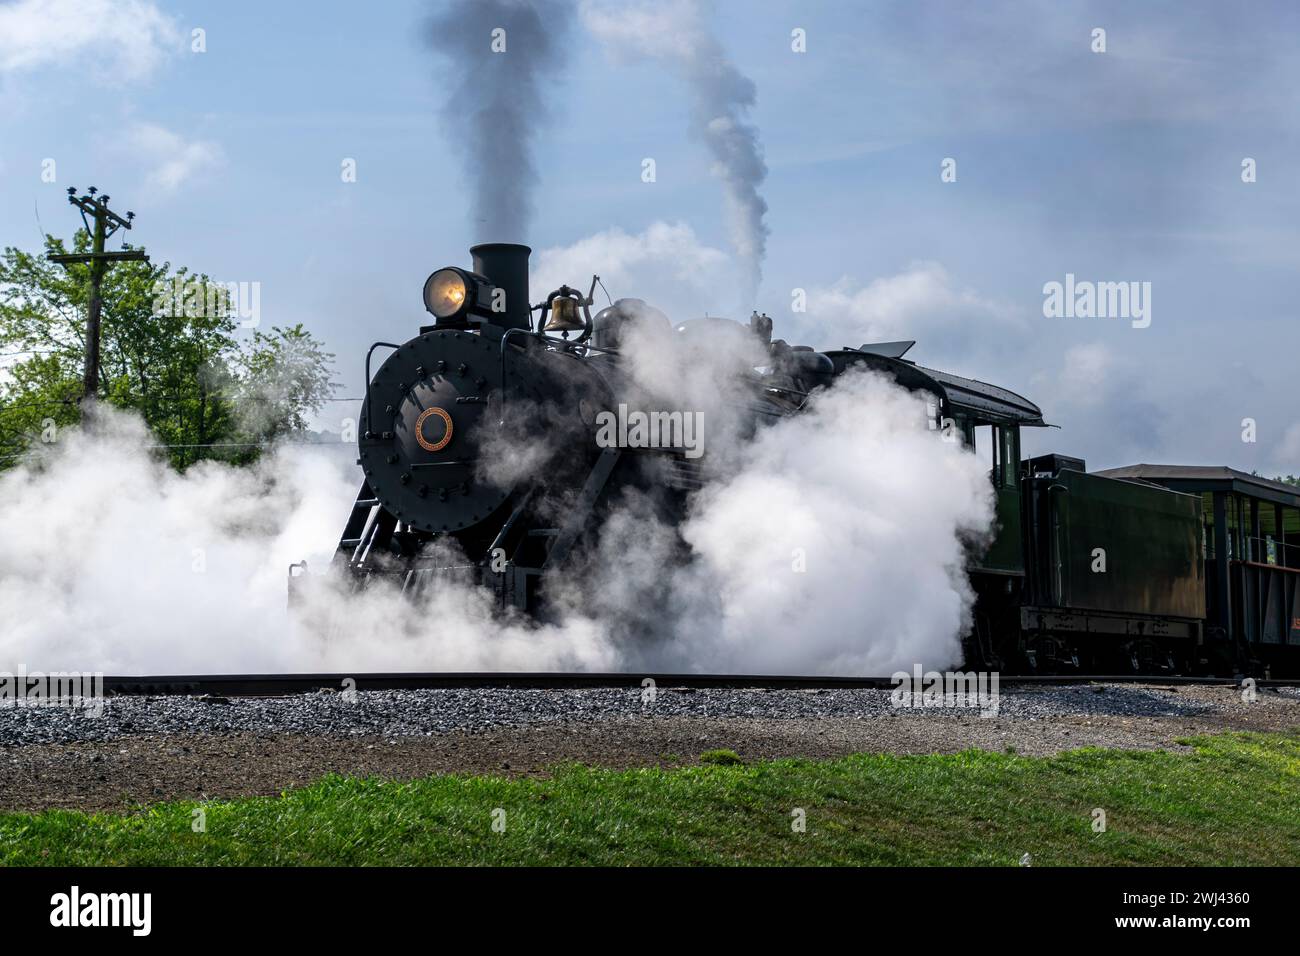 Vue d'un train de passagers à vapeur à voie étroite restaurée soufflant de la fumée et beaucoup de vapeur Banque D'Images